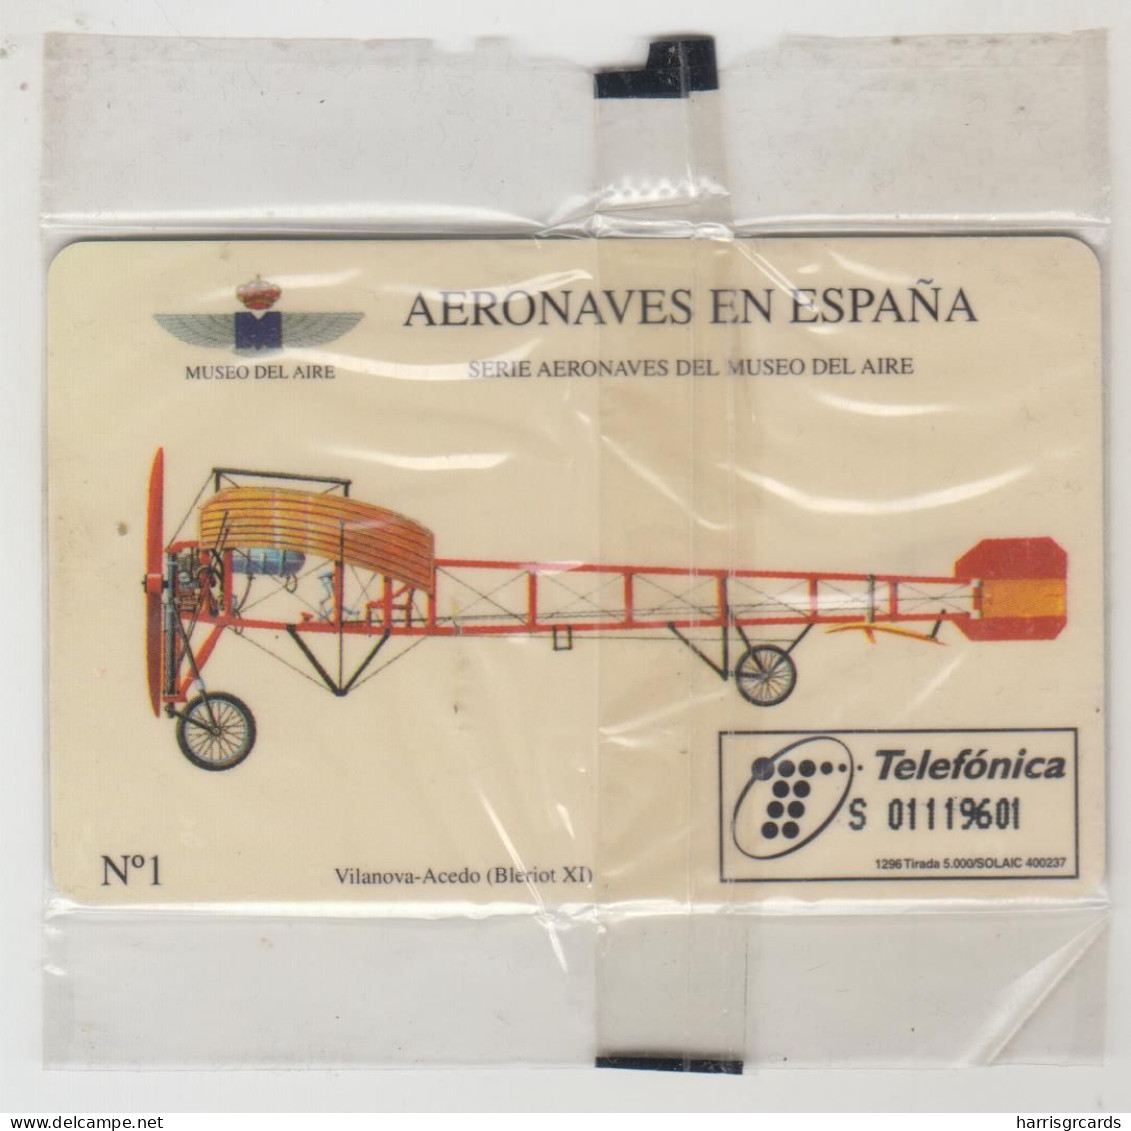 SPAIN - Aeronaves De España N.1 (Plane), P-235, 12/96, Tirage 5.000, Mint - Private Issues